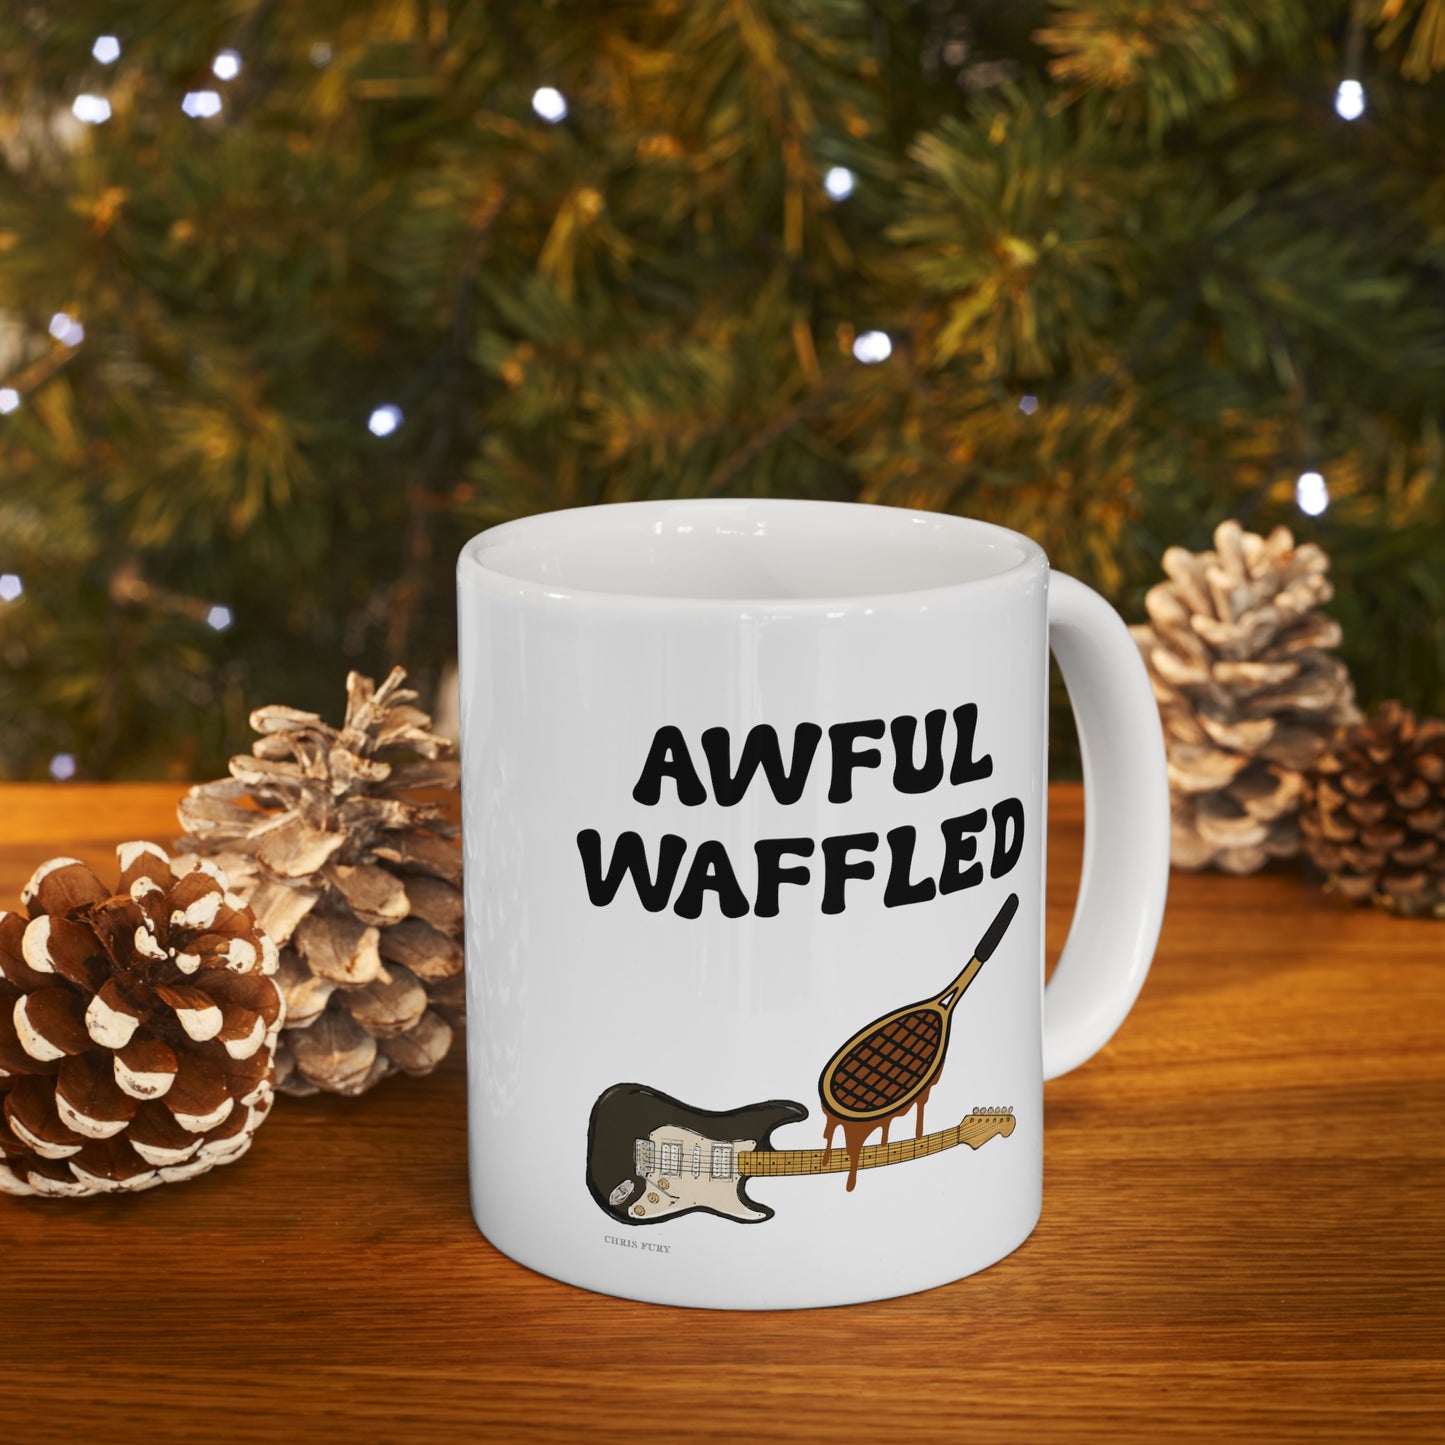 Awful Waffled Mug